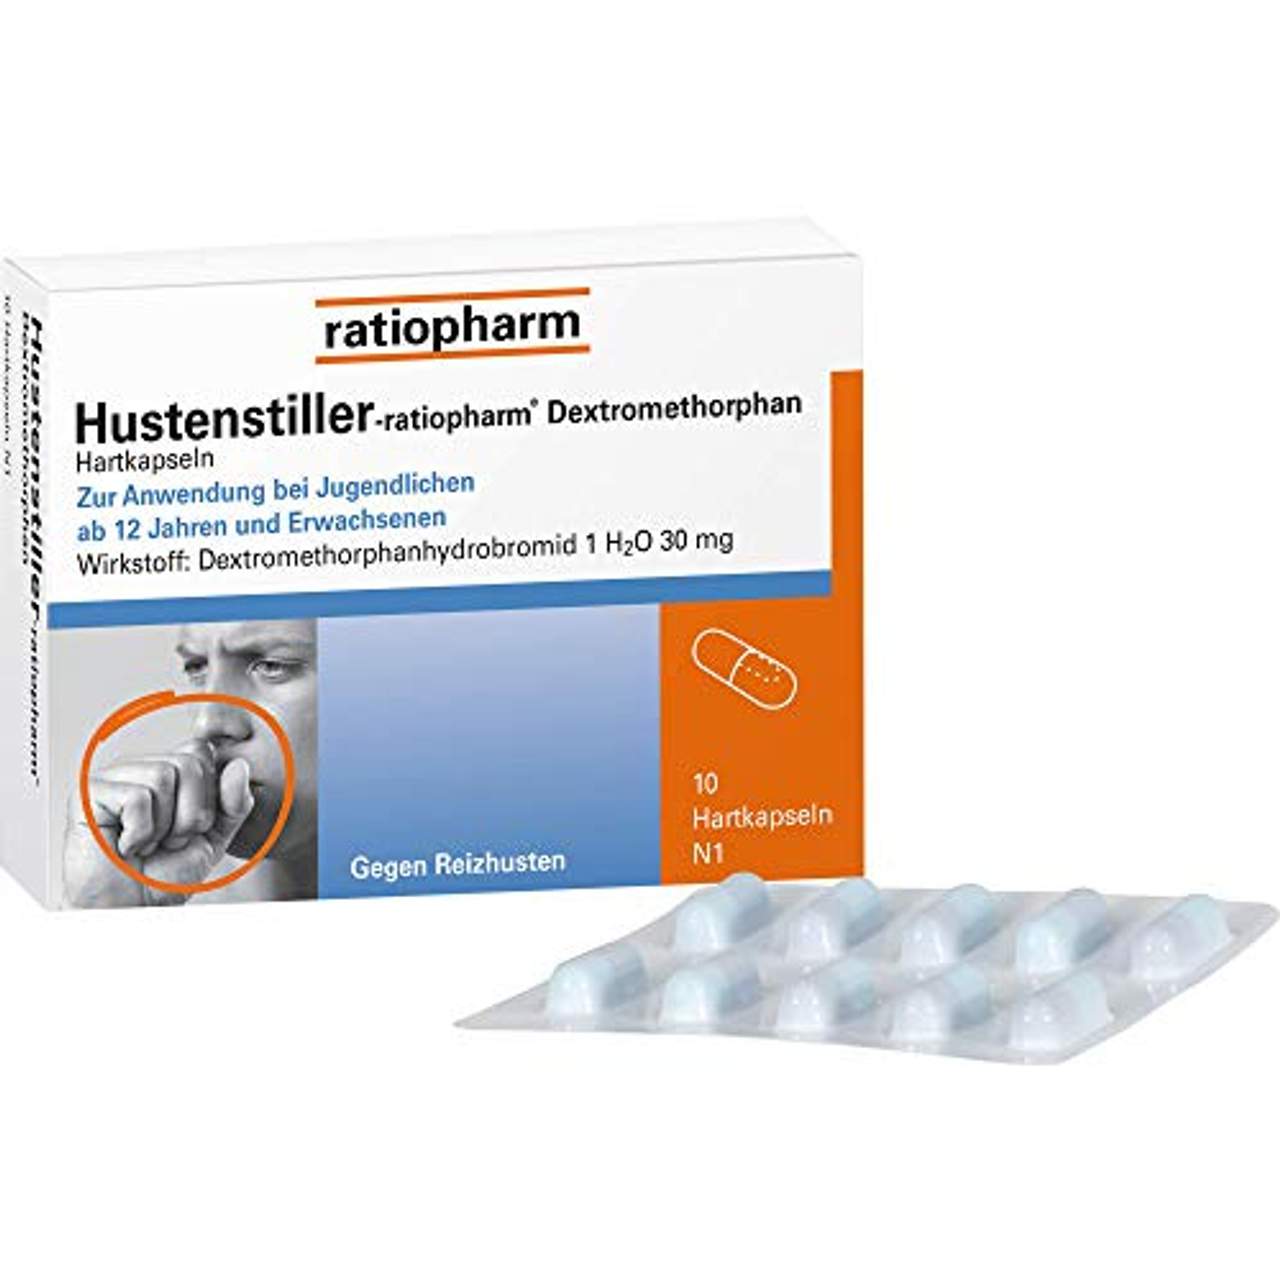 Ratiopharm Hustenstiller-ratiopharm Dextromethorphan Hartkapseln